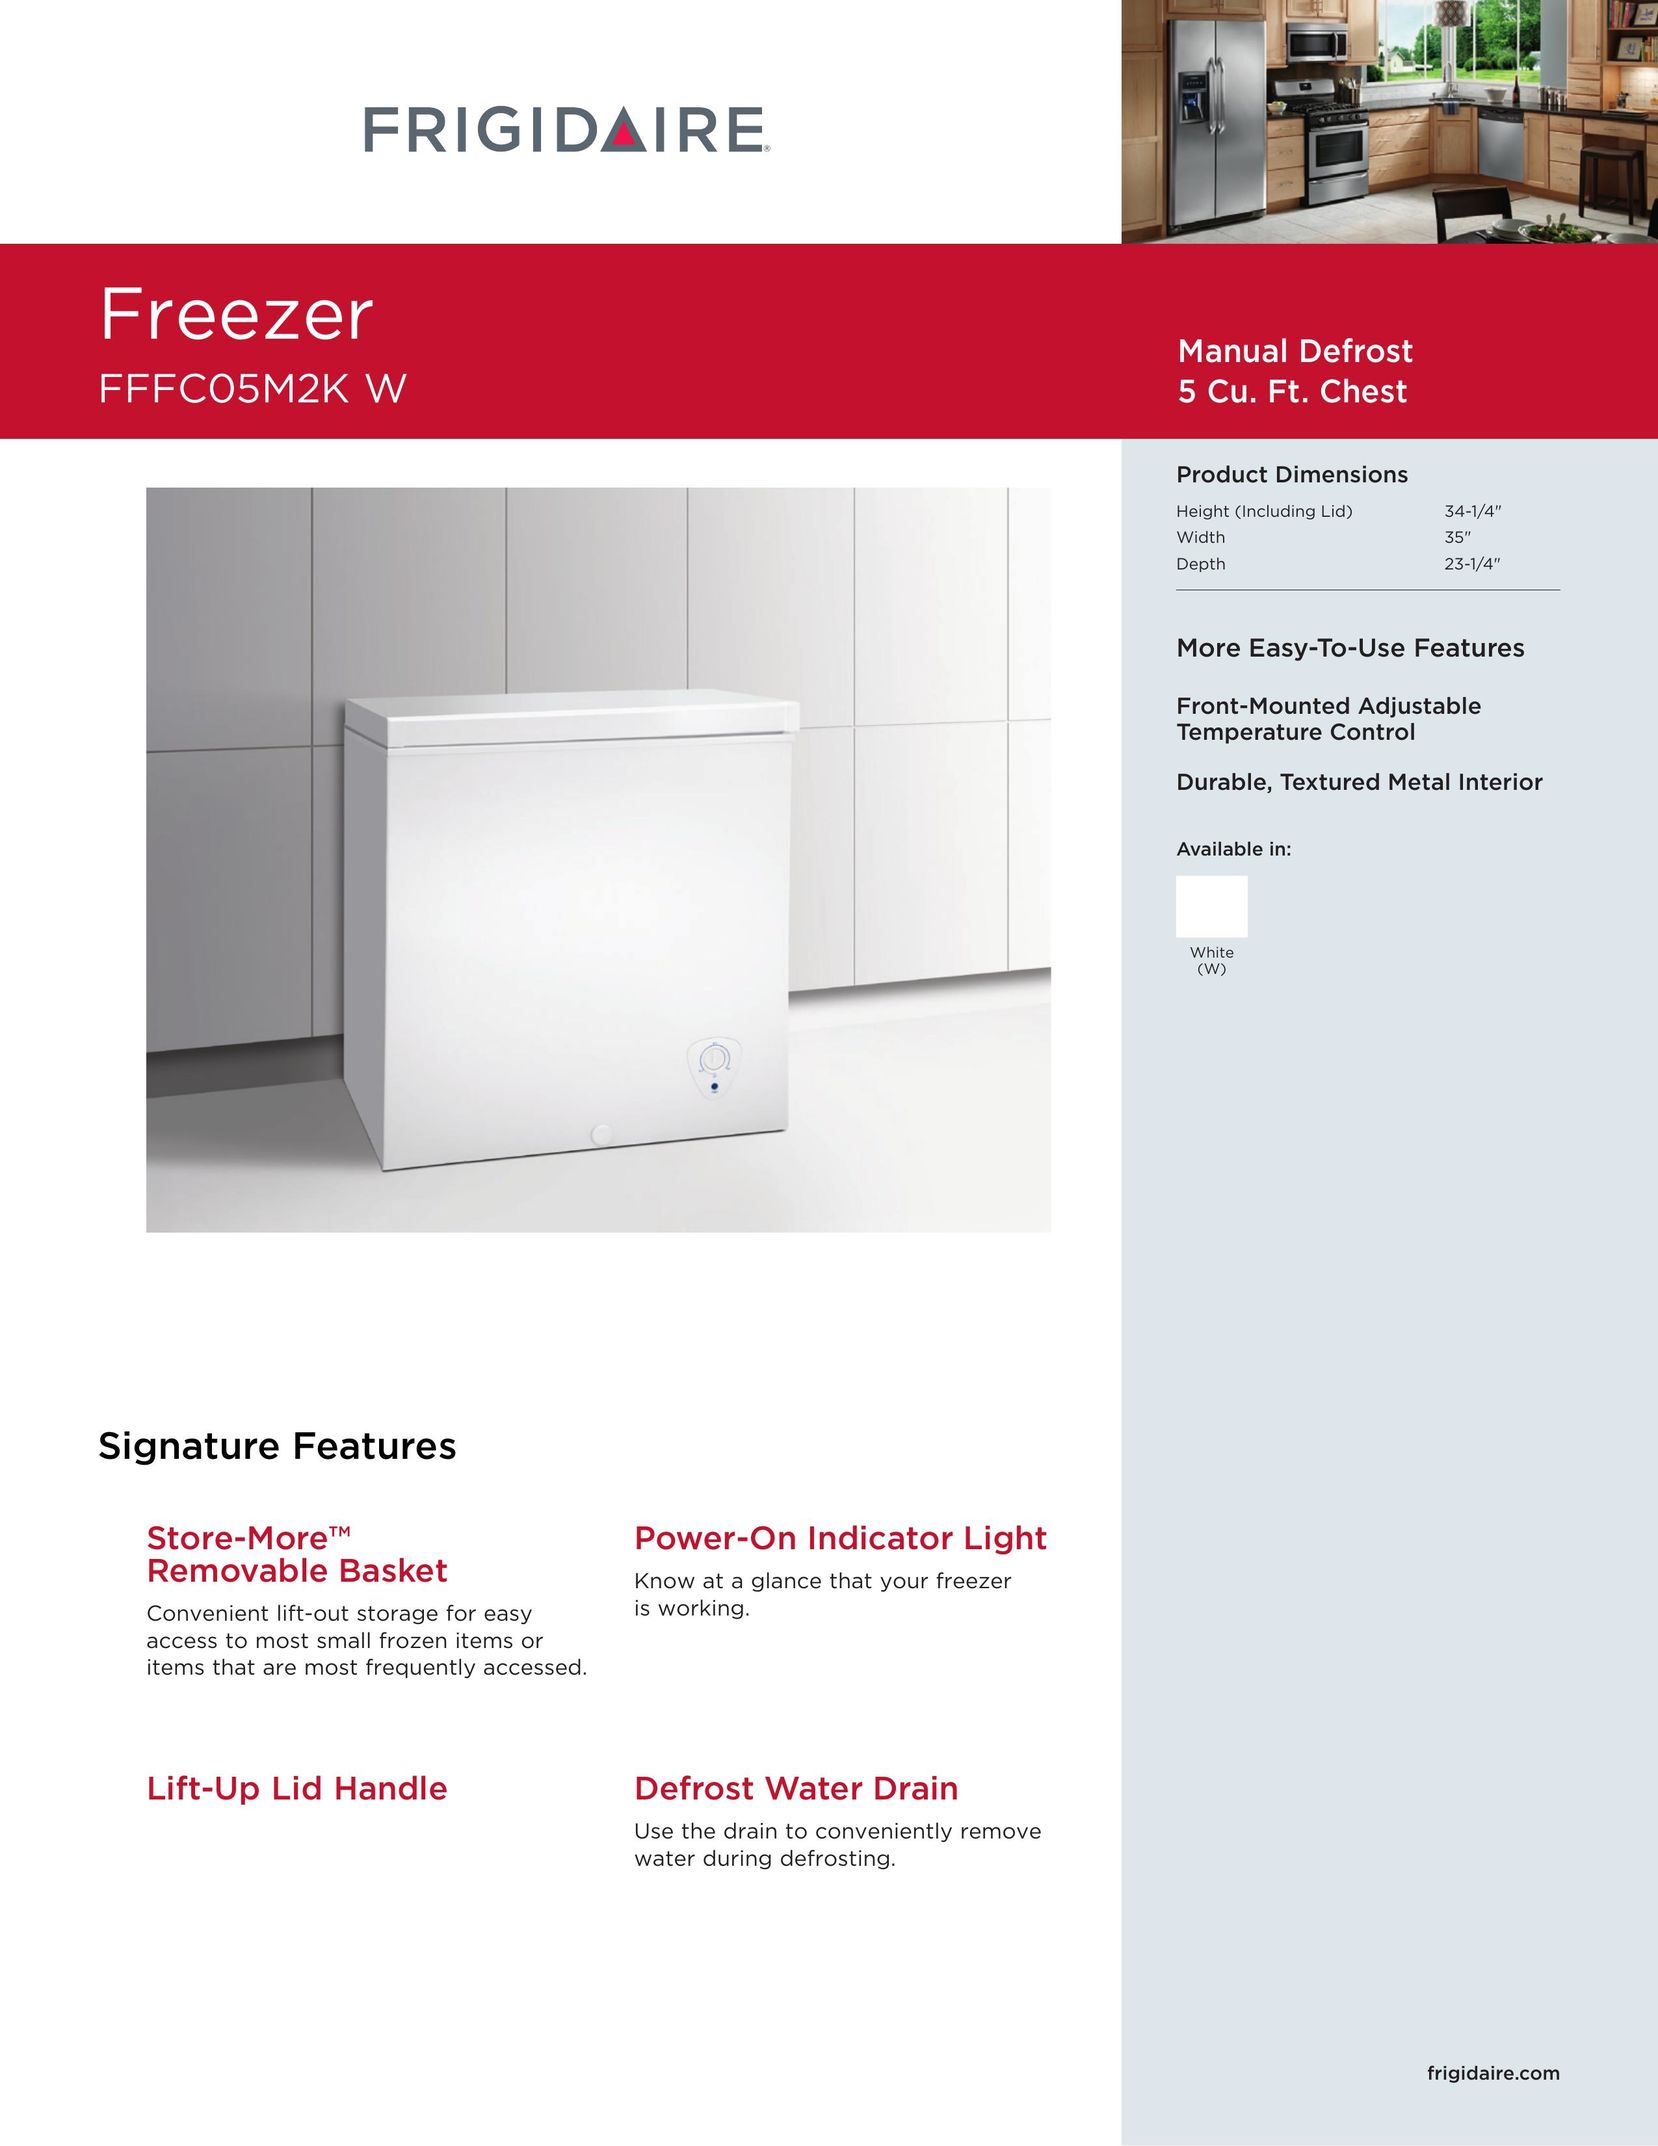 Frigidaire FFFC05M2KW Freezer User Manual